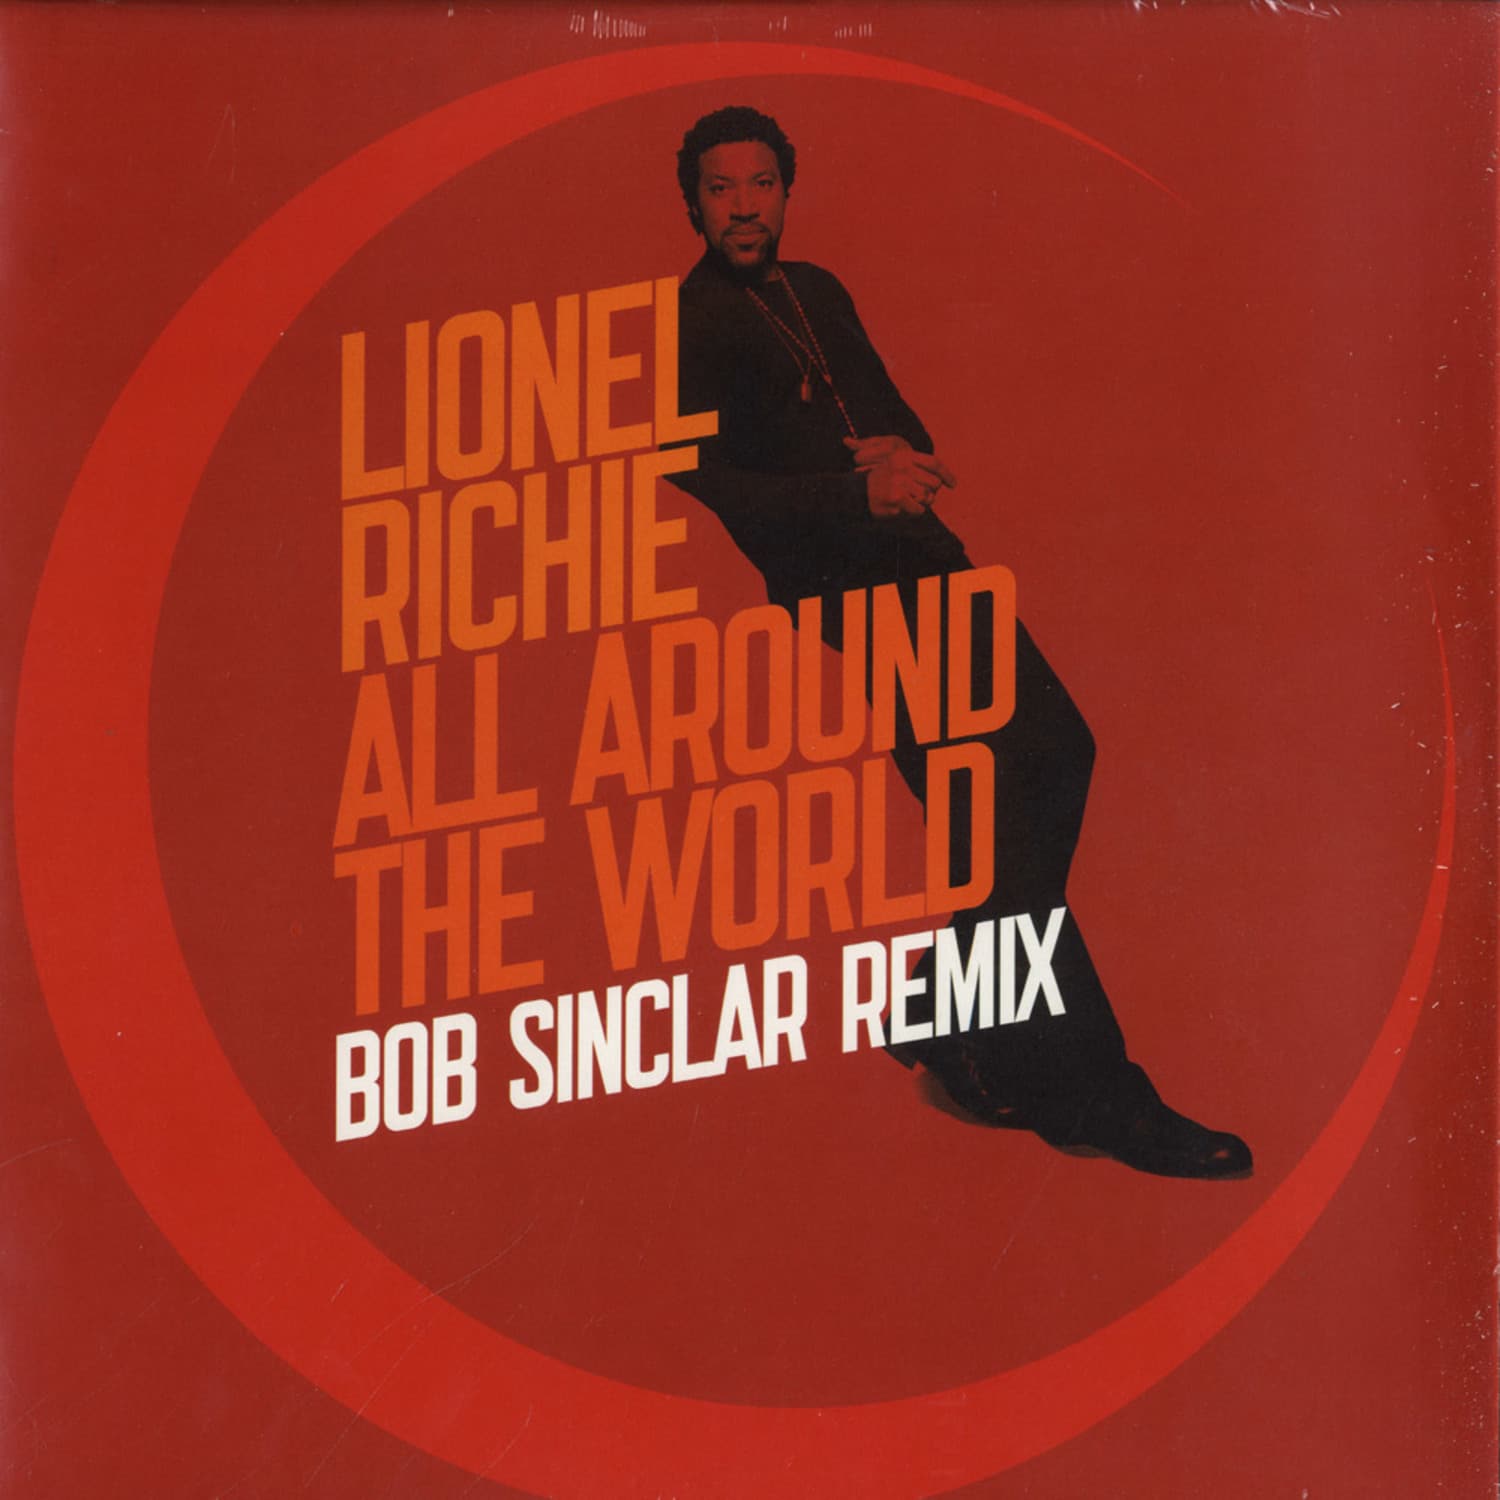 Lionel Richie - ALL AROUND THE WORLD 